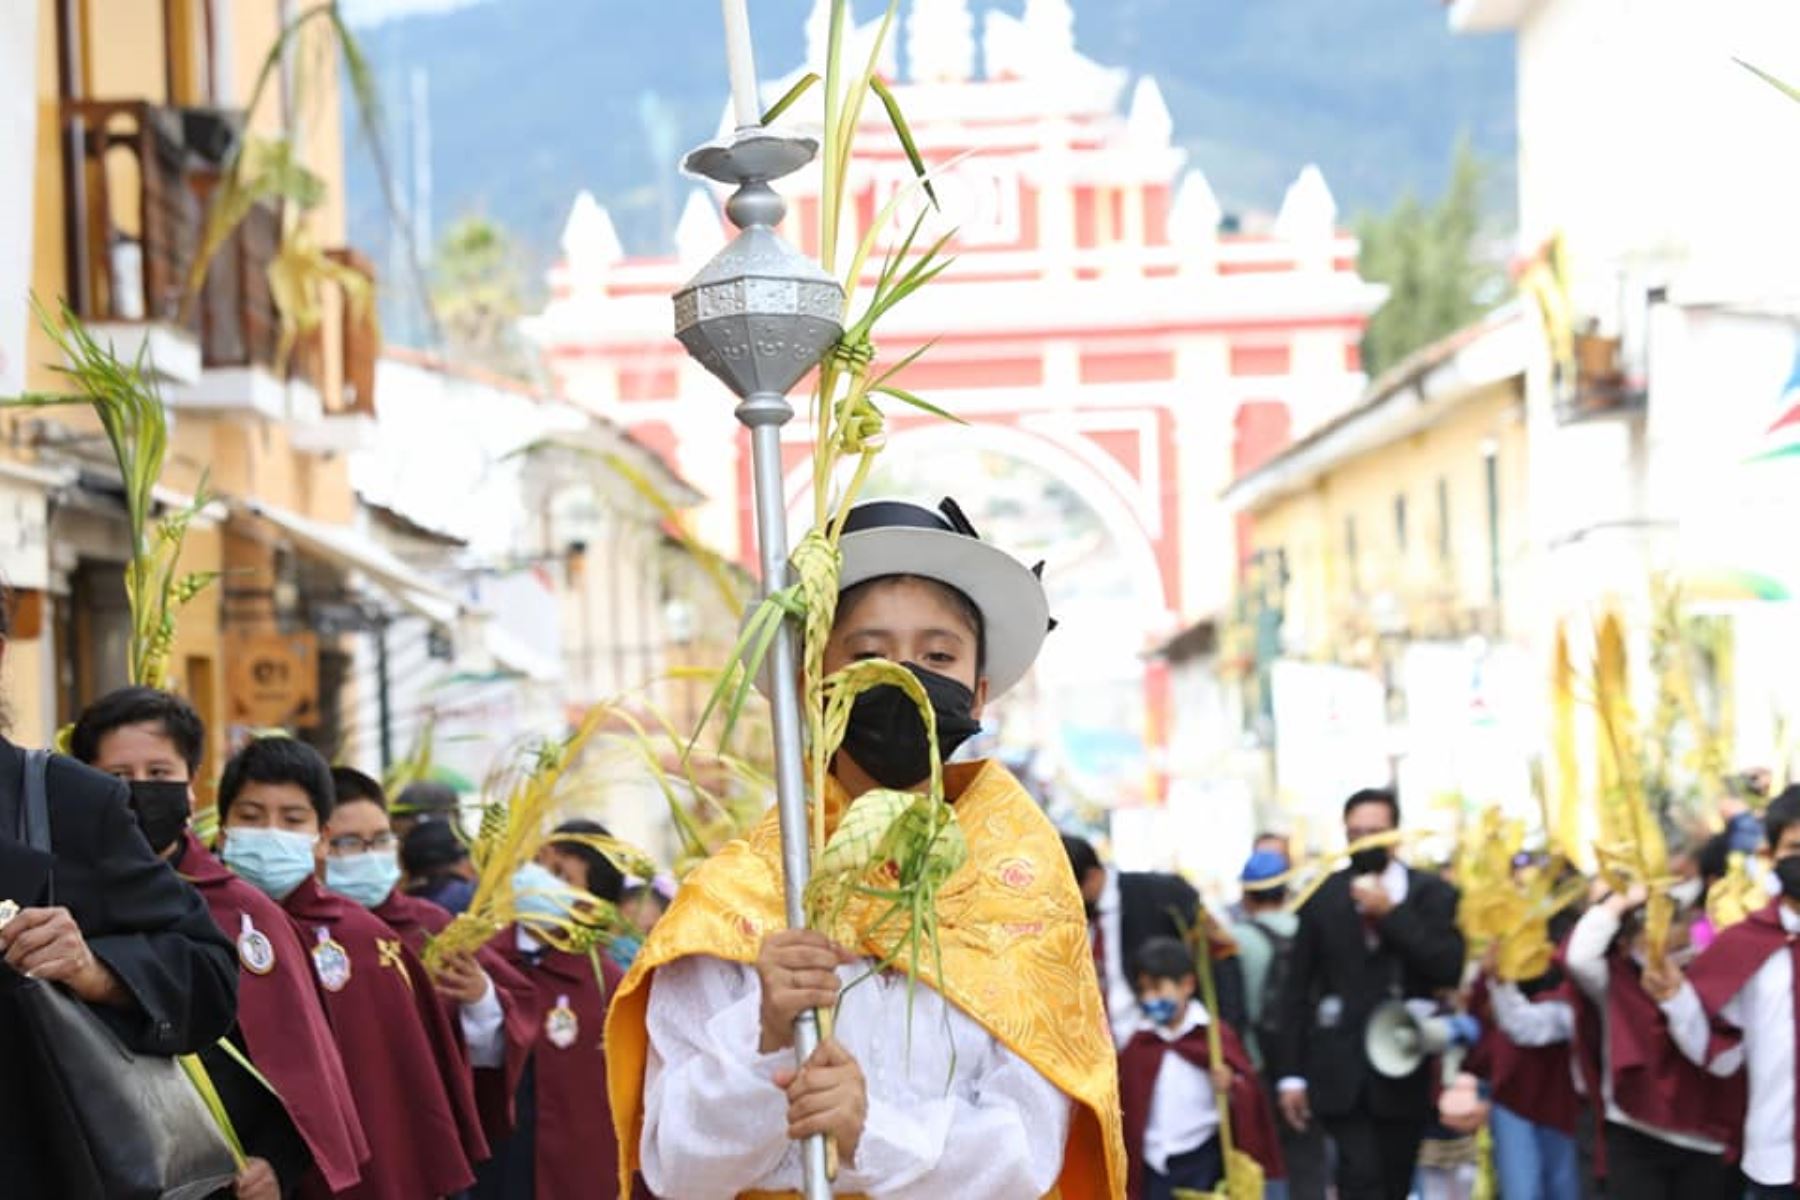 Los turistas pueden gozar de una estadía segura en Ayacucho durante la celebración de la Semana Santa. Cortesía